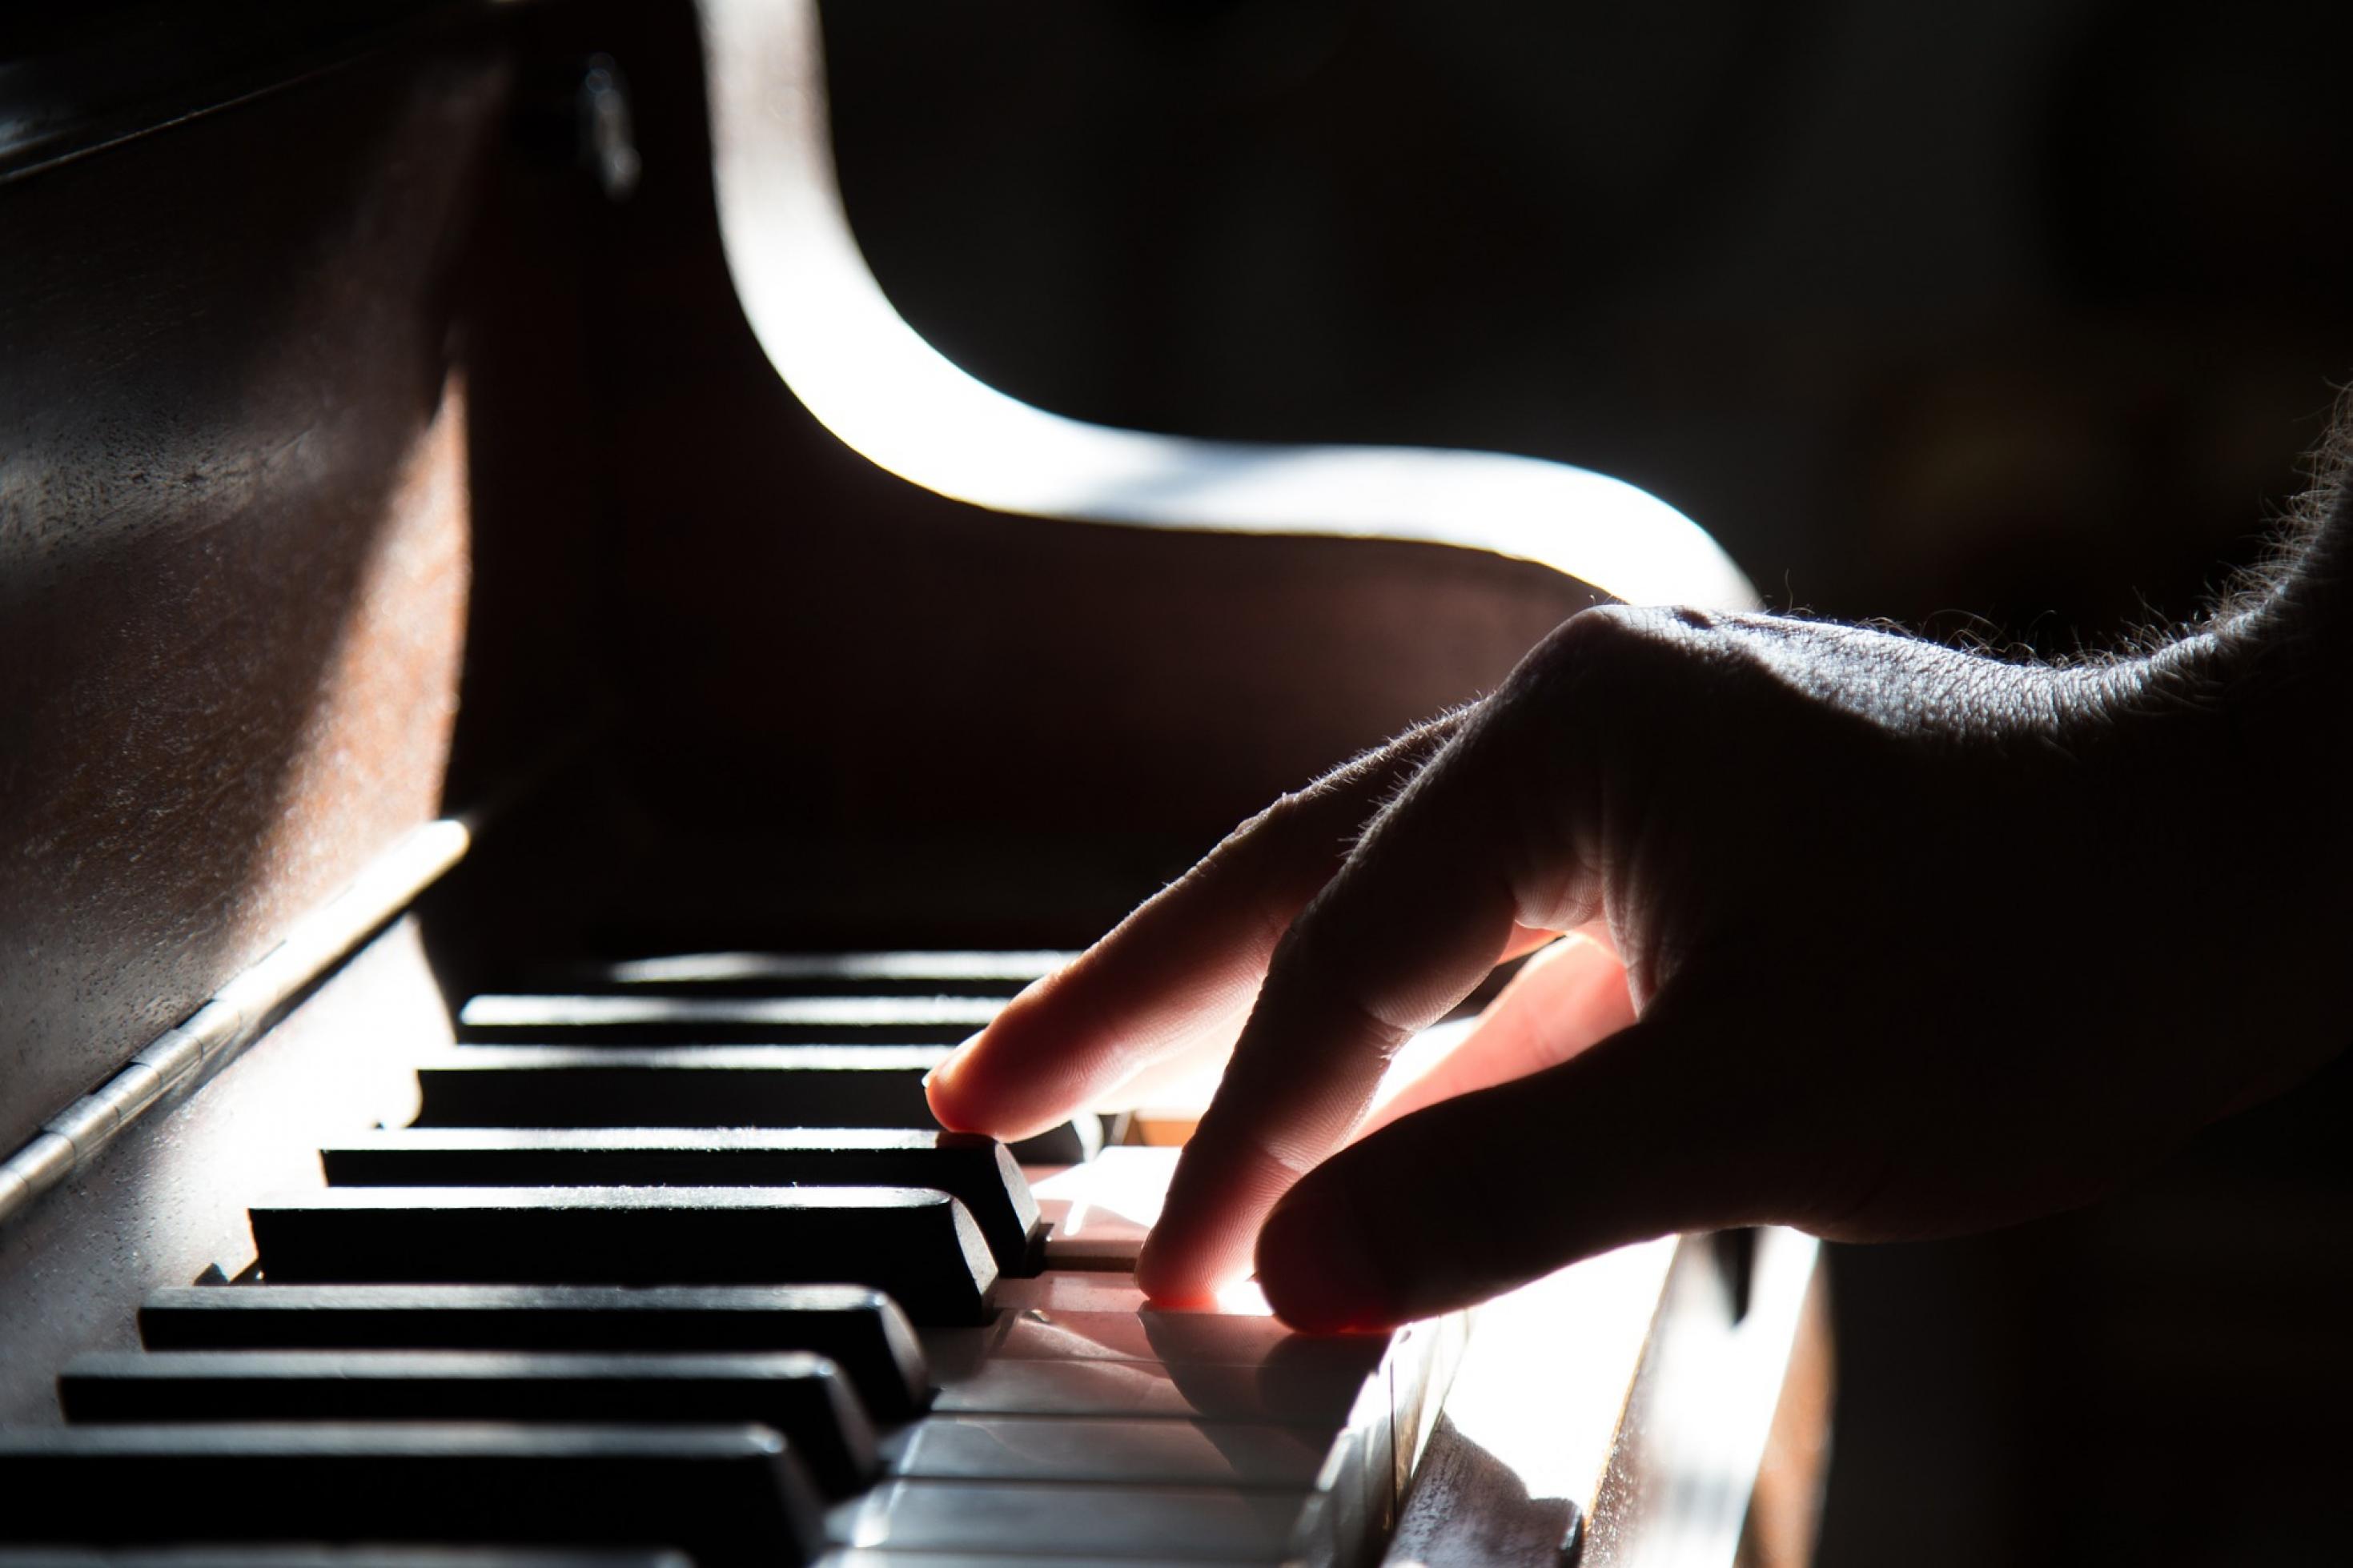 Die Hand eines Mannes spielt sanft die Tasten eine Klaviers.